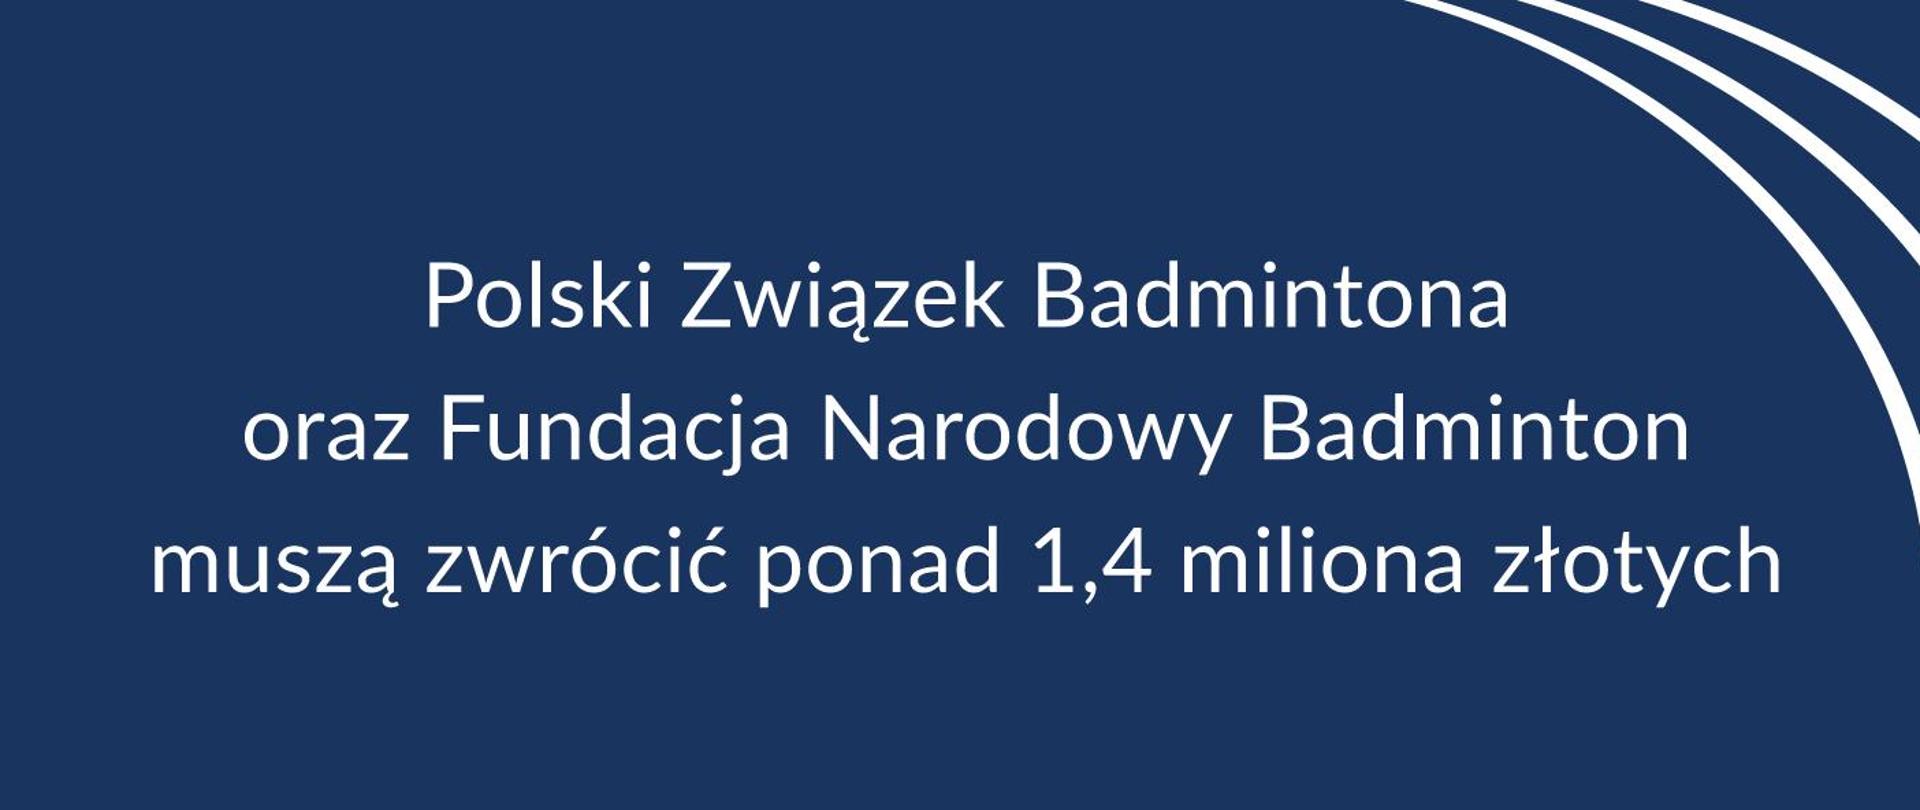 Biały napis na granatowym tle: Polski Związek Badmintona oraz Fundacja Narodowy Badminton muszą zwrócić ponad 1,4 miliona złotych